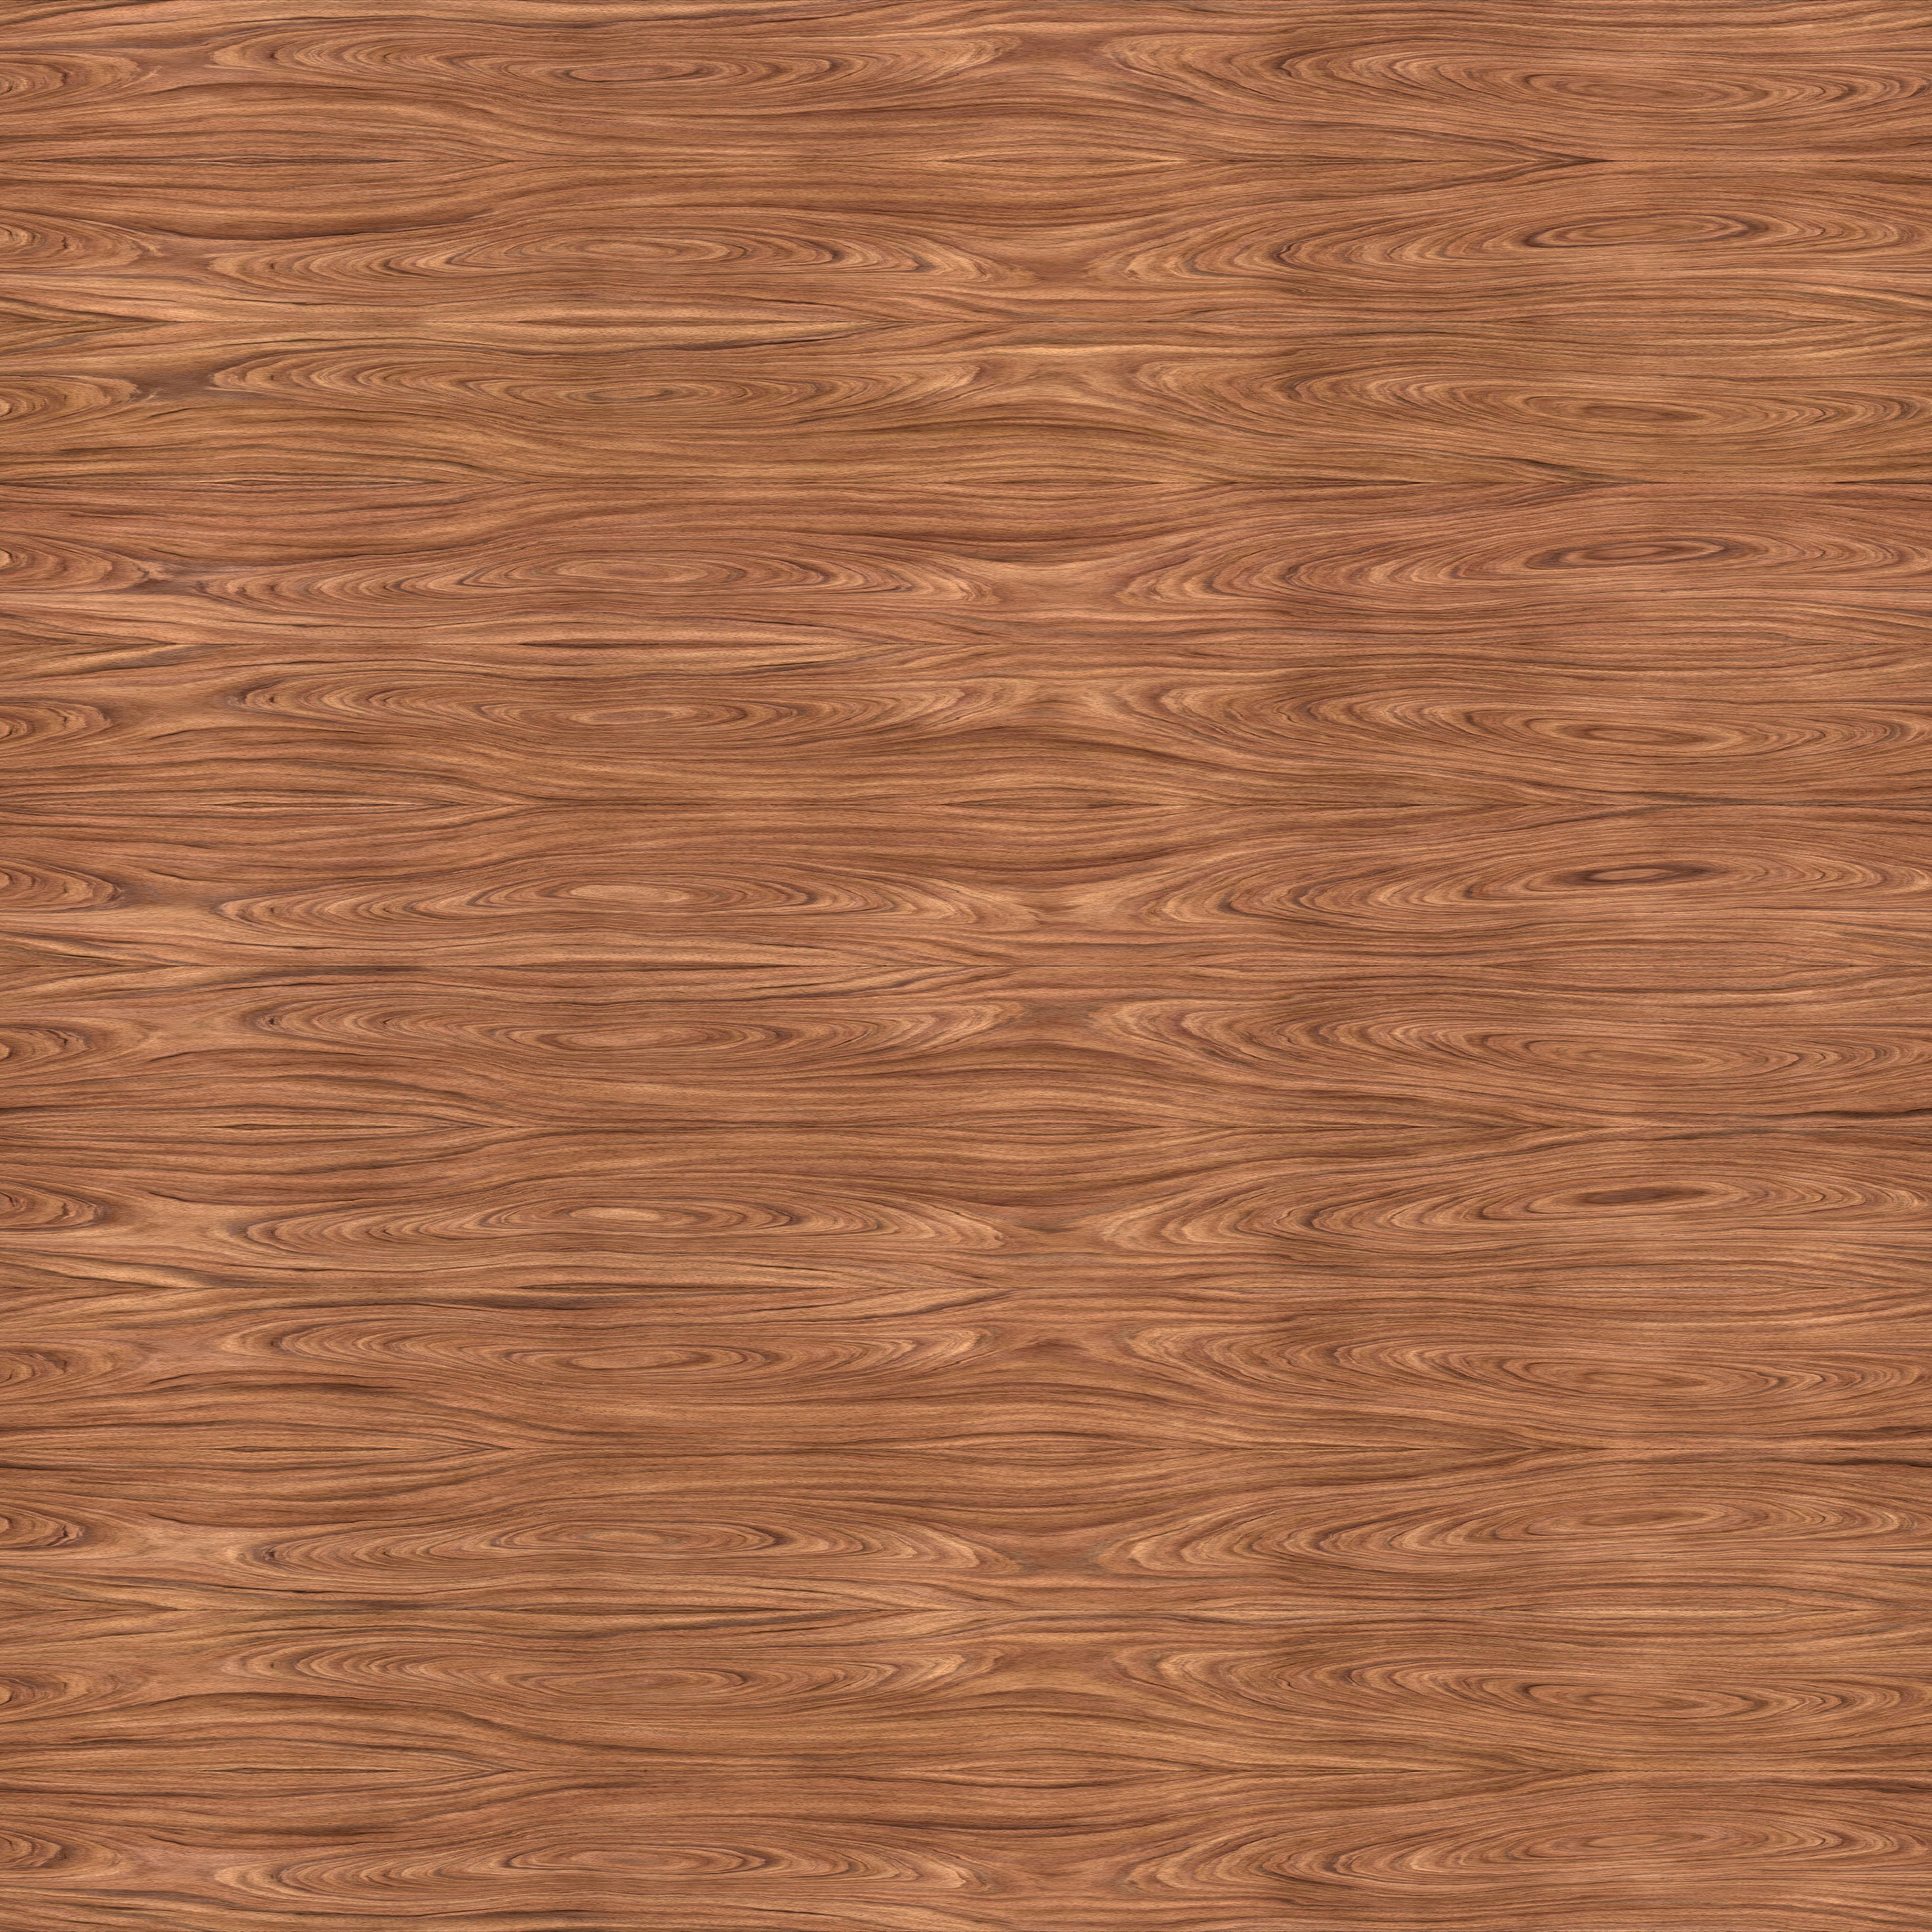 Palisander free wood texture